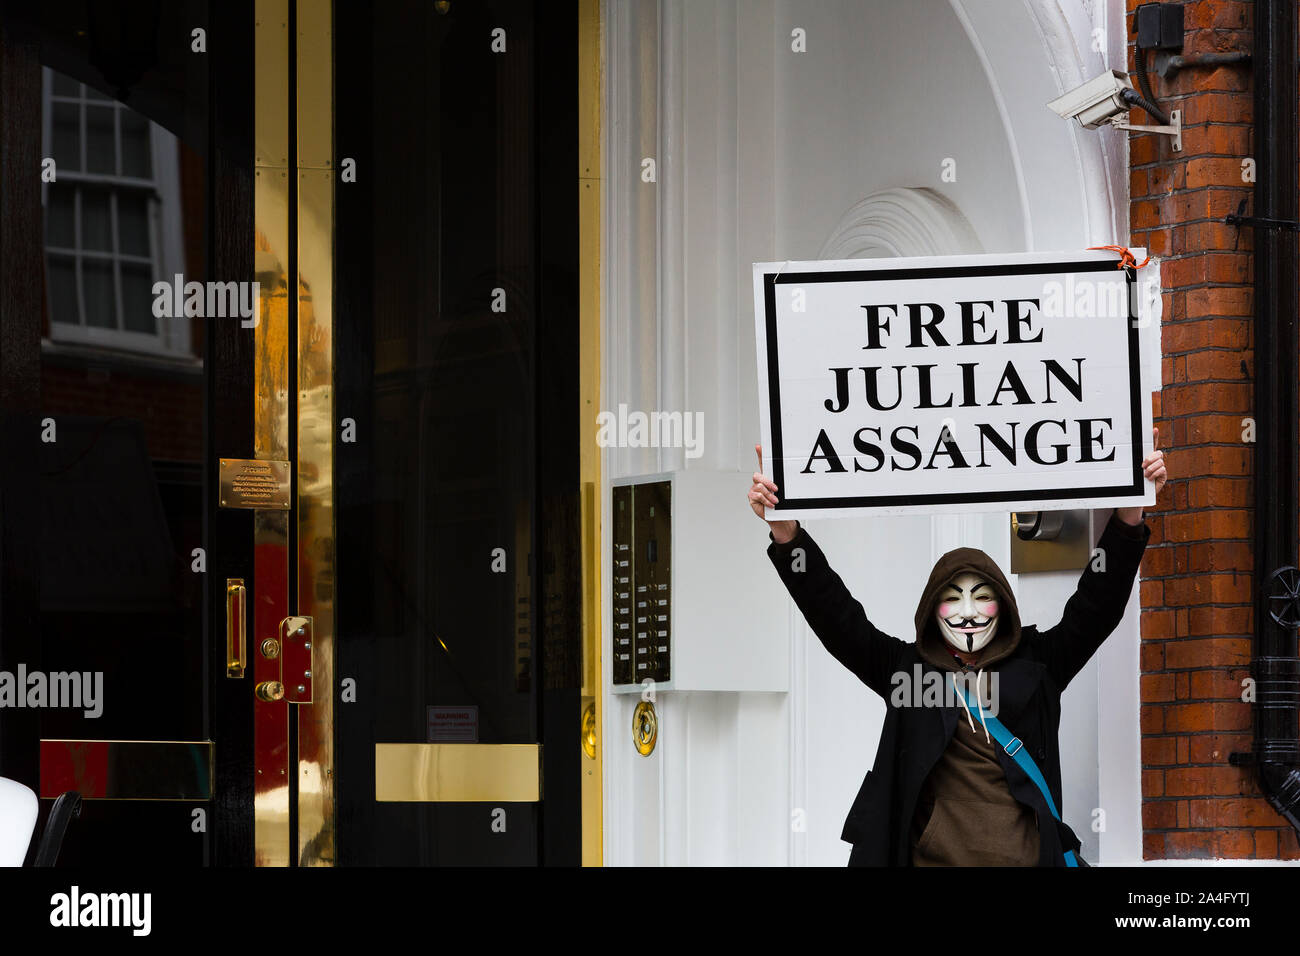 Londres, Royaume-Uni. Un manifestant dans un masque de Guy Fawkes est titulaire d'un 'gratuitement' Julian Assange placard sur les marches de l'ambassade équatorienne à Knightsbridge en anticipa Banque D'Images